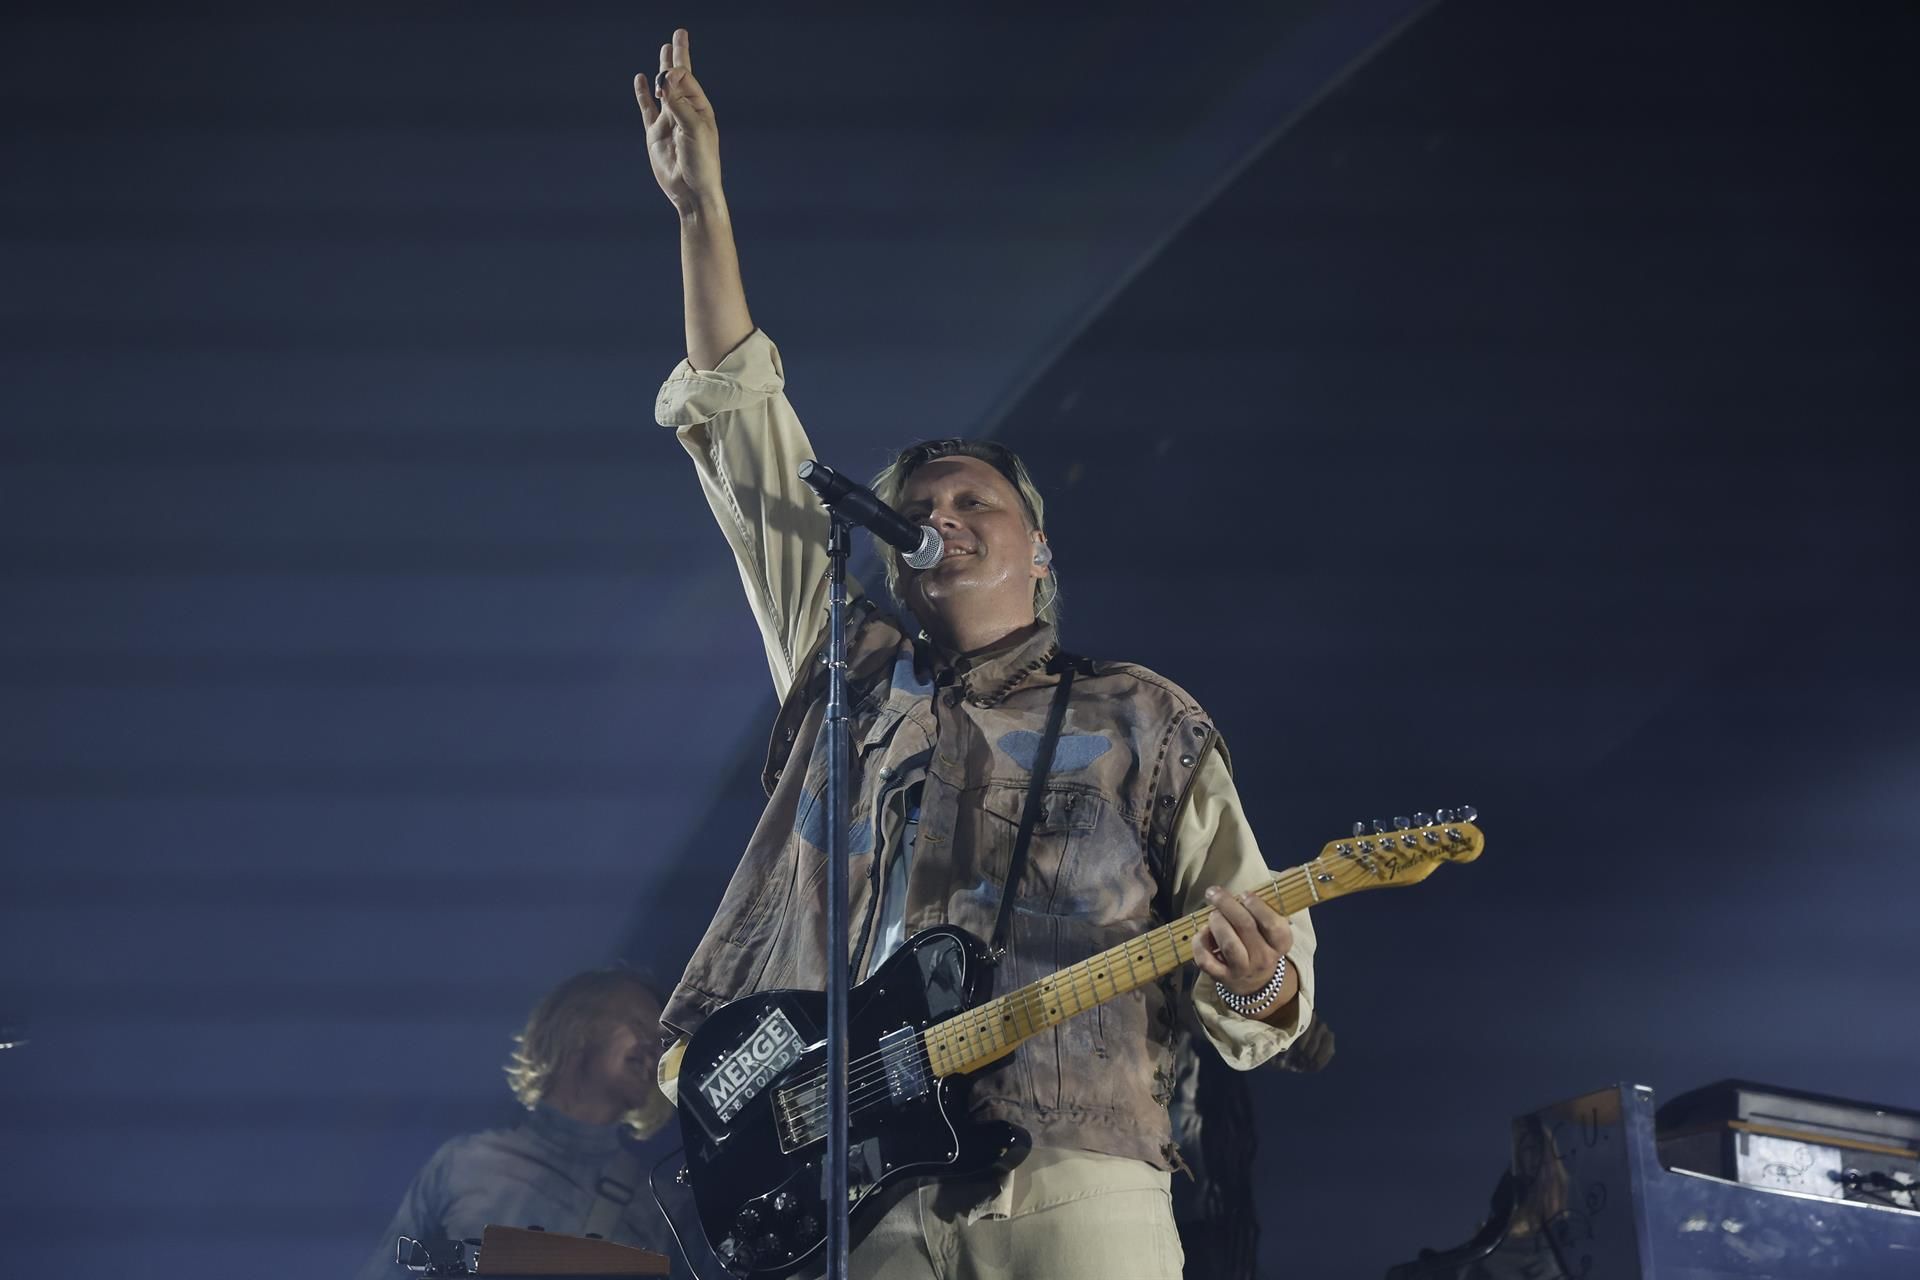 El cantante de la banda canadiense Arcade Fire, Win Butler, durante el concierto en el que han presentado su sexto disco de estudio, "WE", este miércoles en el WiZink Center de Madrid. EFE/Juanjo Martín